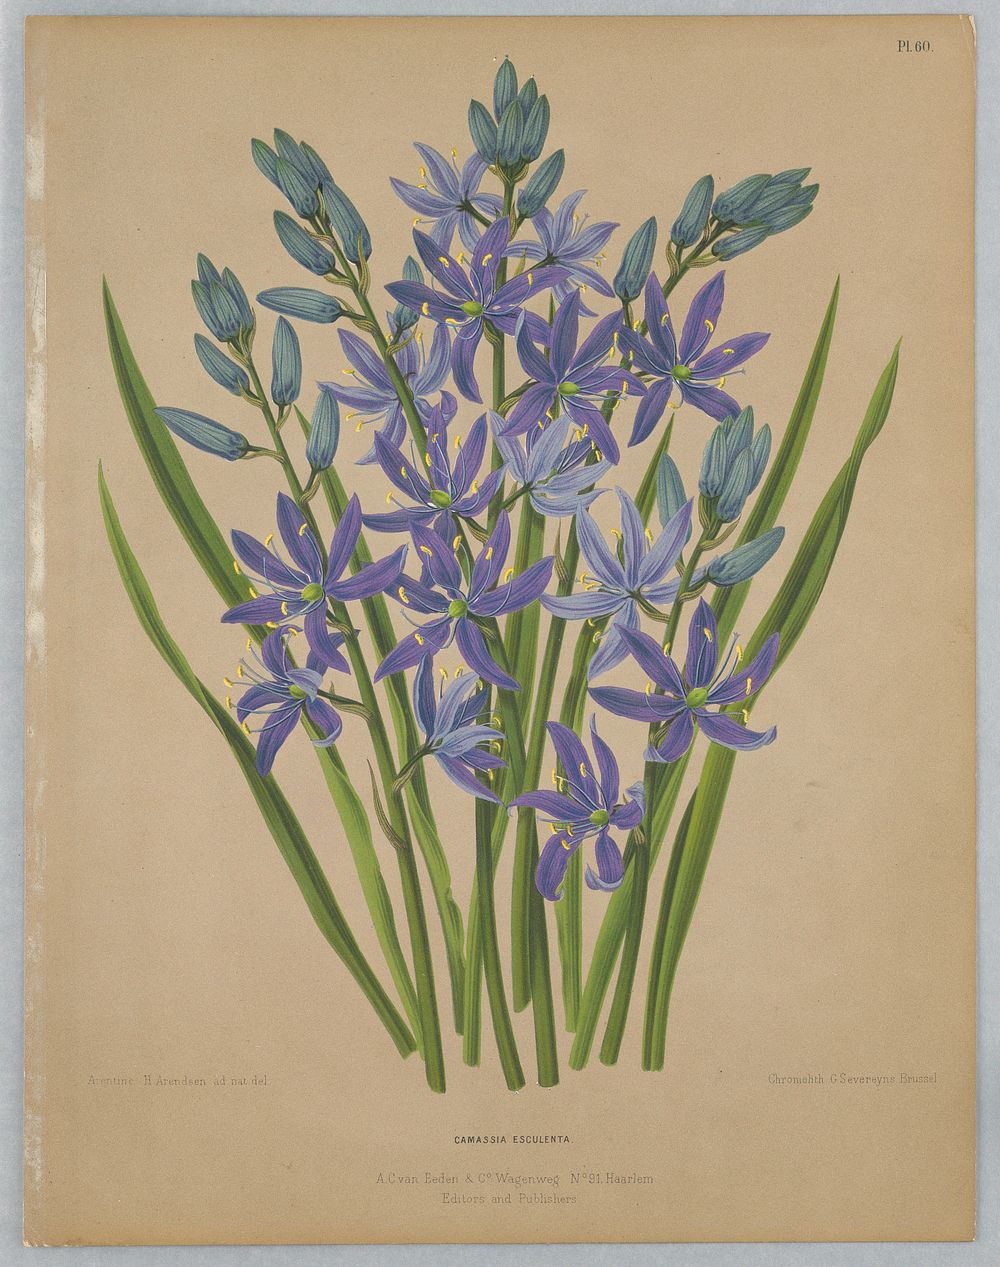 Camassia Esculenta, Plate 60 from A. C. Van Eeden's "Flora of Haarlem"